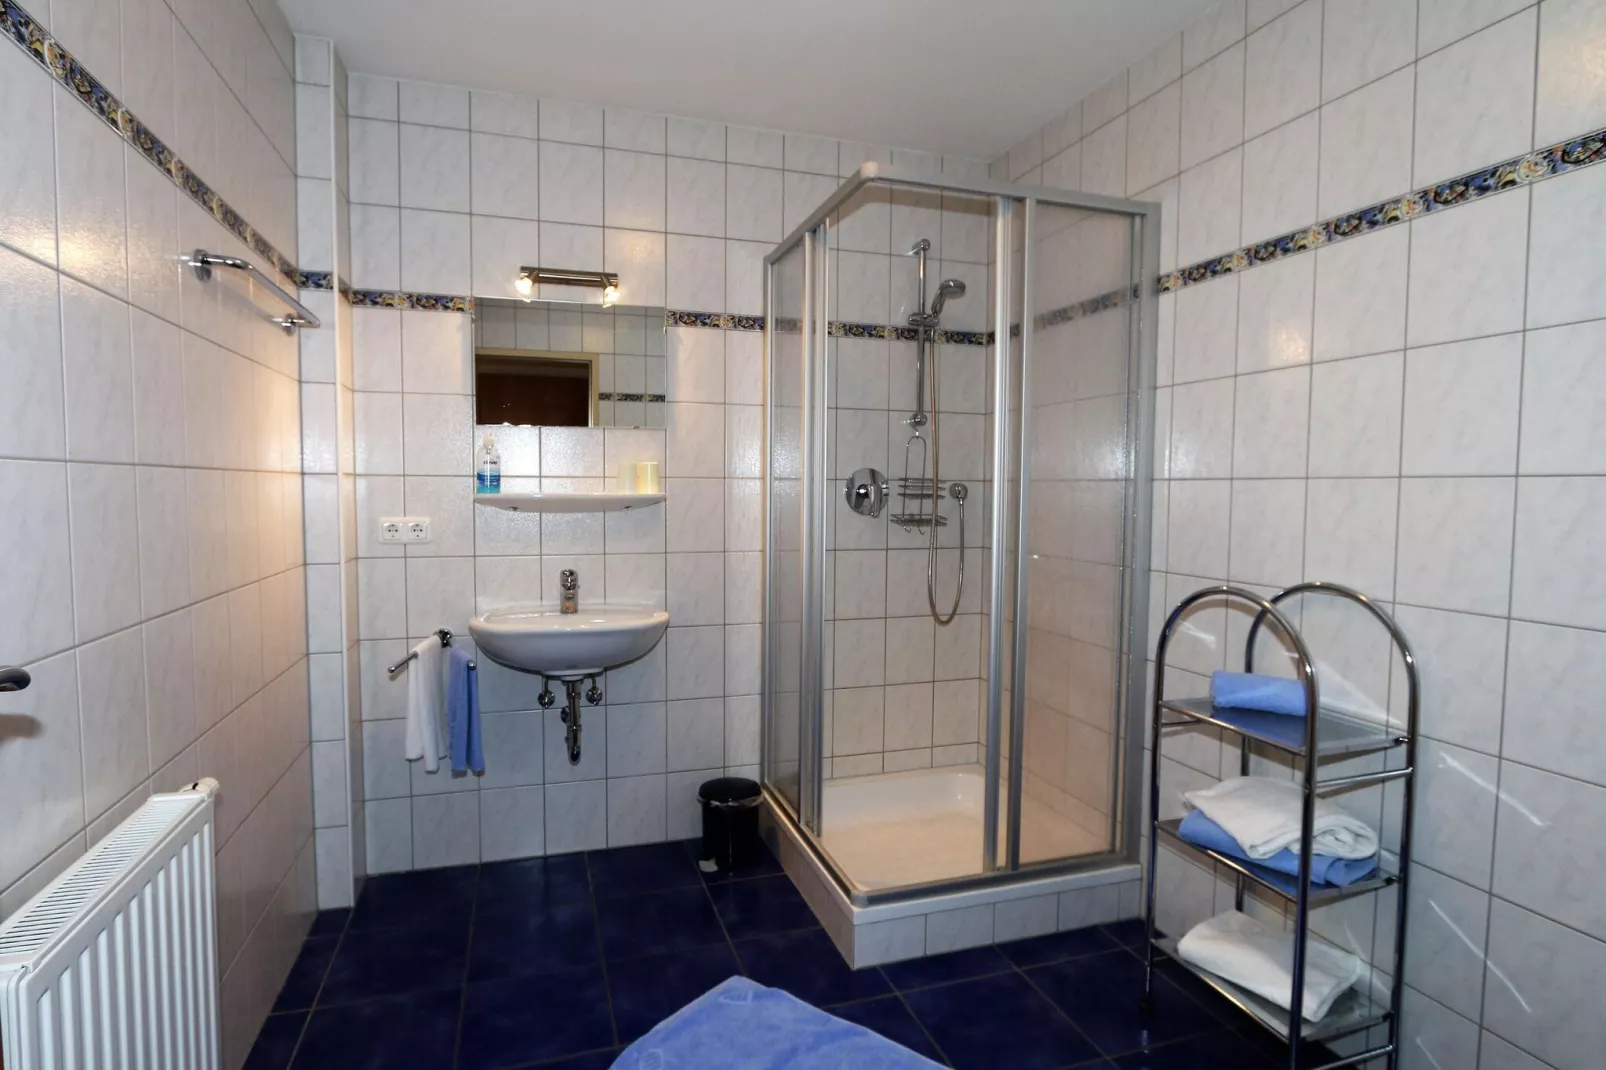 Wirtlerhaus Bichlbach - 4 Personen-Badkamer